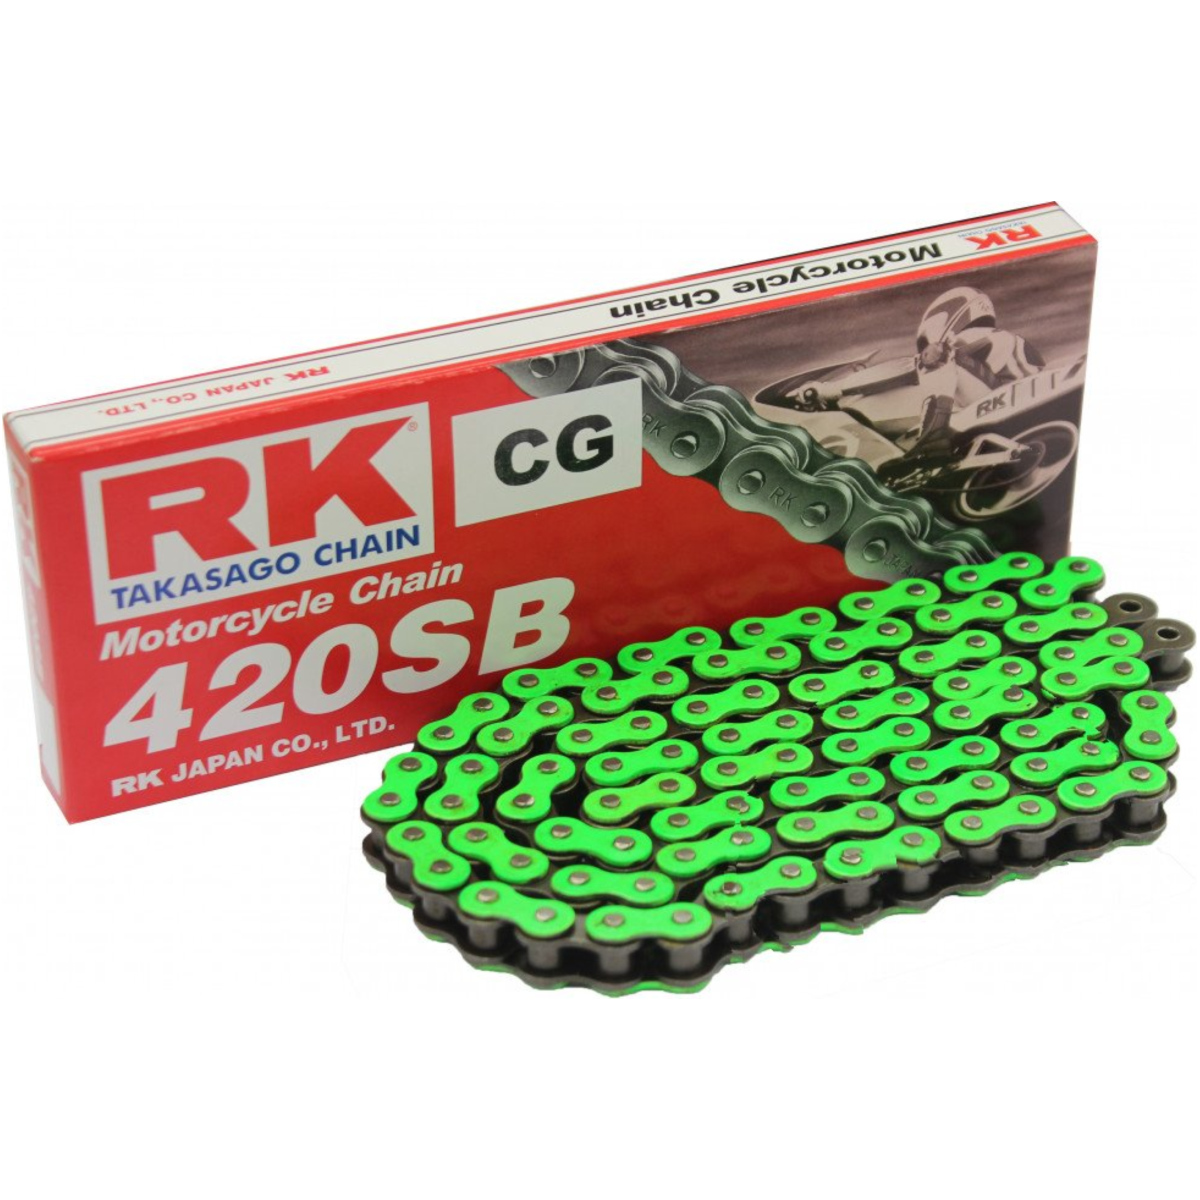 Rk cgrk420sb/130 motorradkette antriebskette  standardkette grün 420 sb/130 cg420sb130 von RK